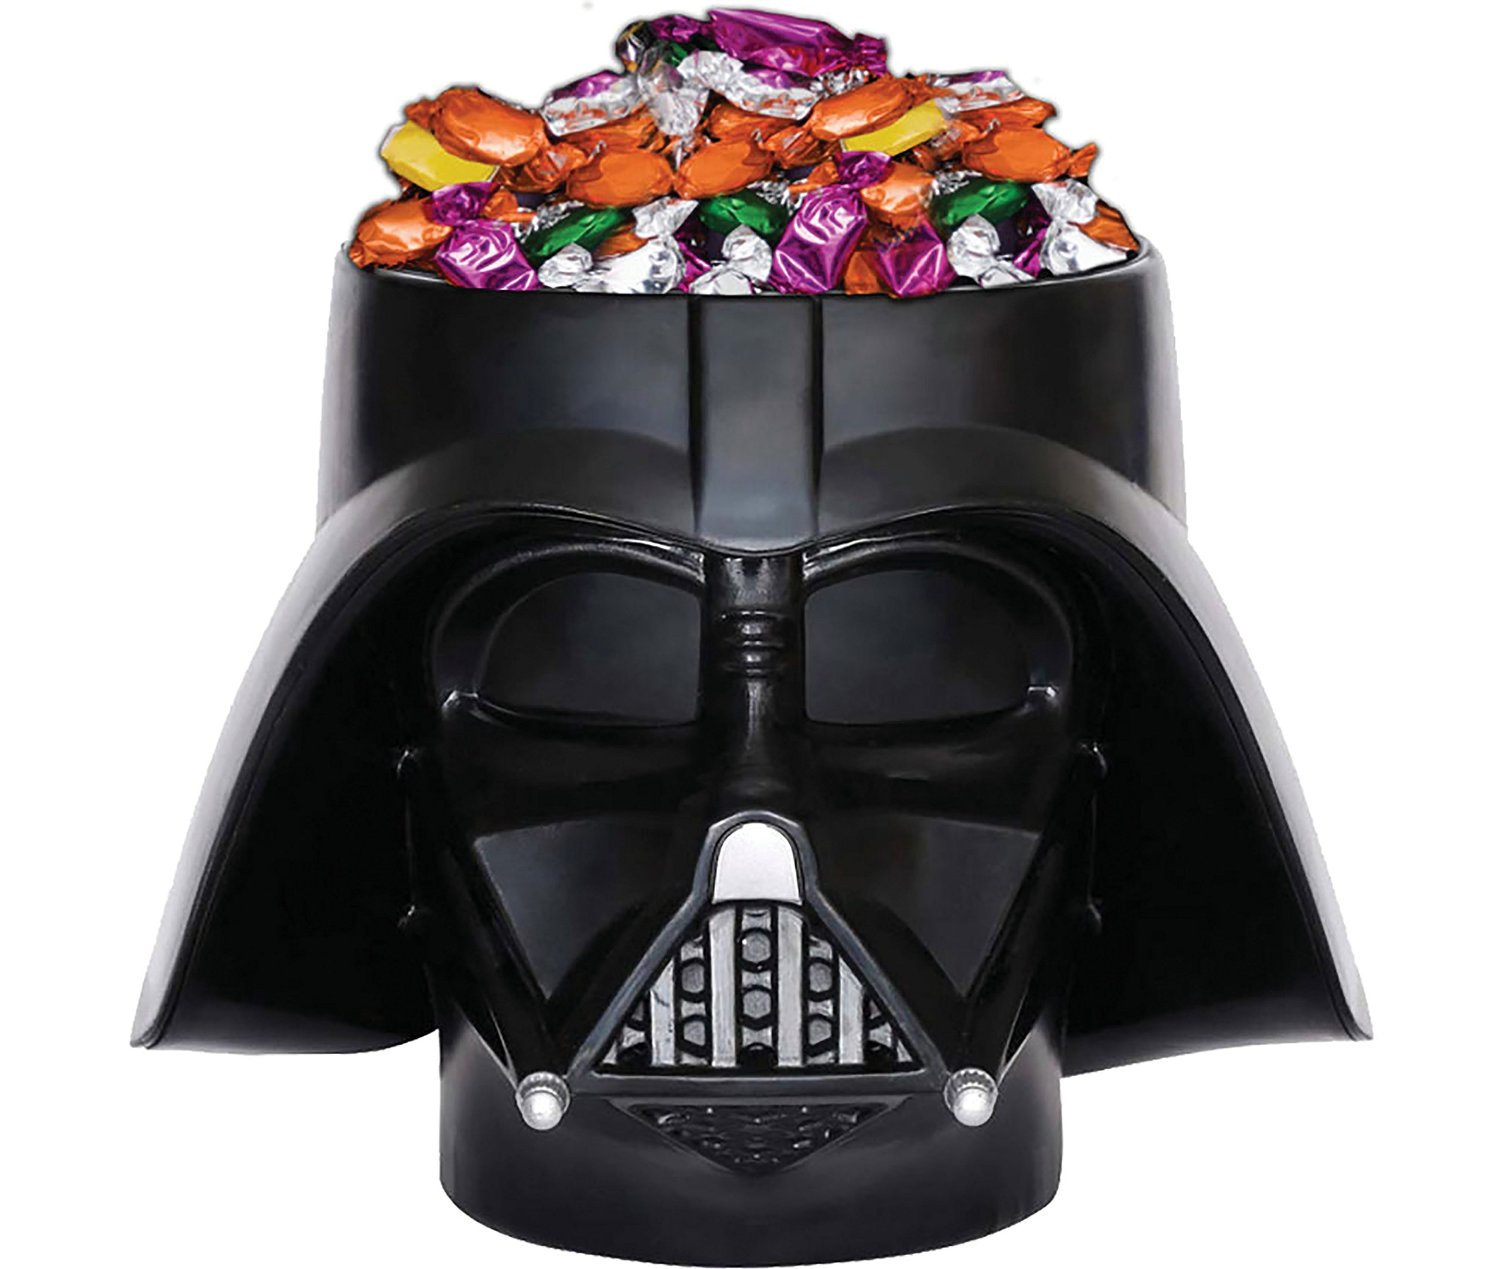 Star Wars Darth Vader Candy Bowl